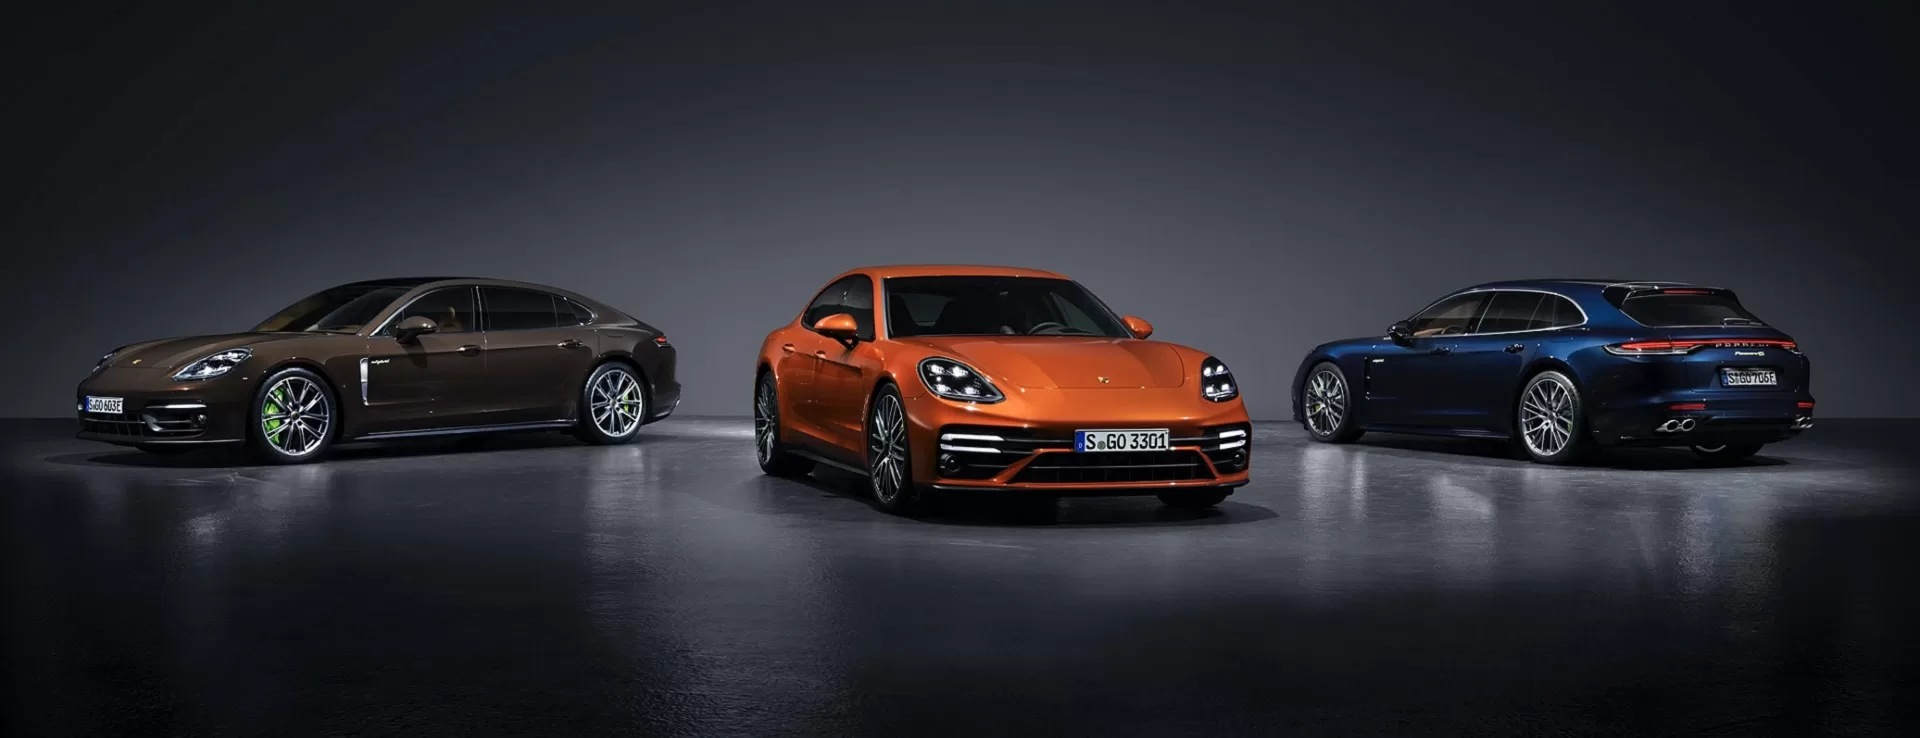 Новая гибридная модель и лучшая в классе динамика: обновленный Porsche Panamera